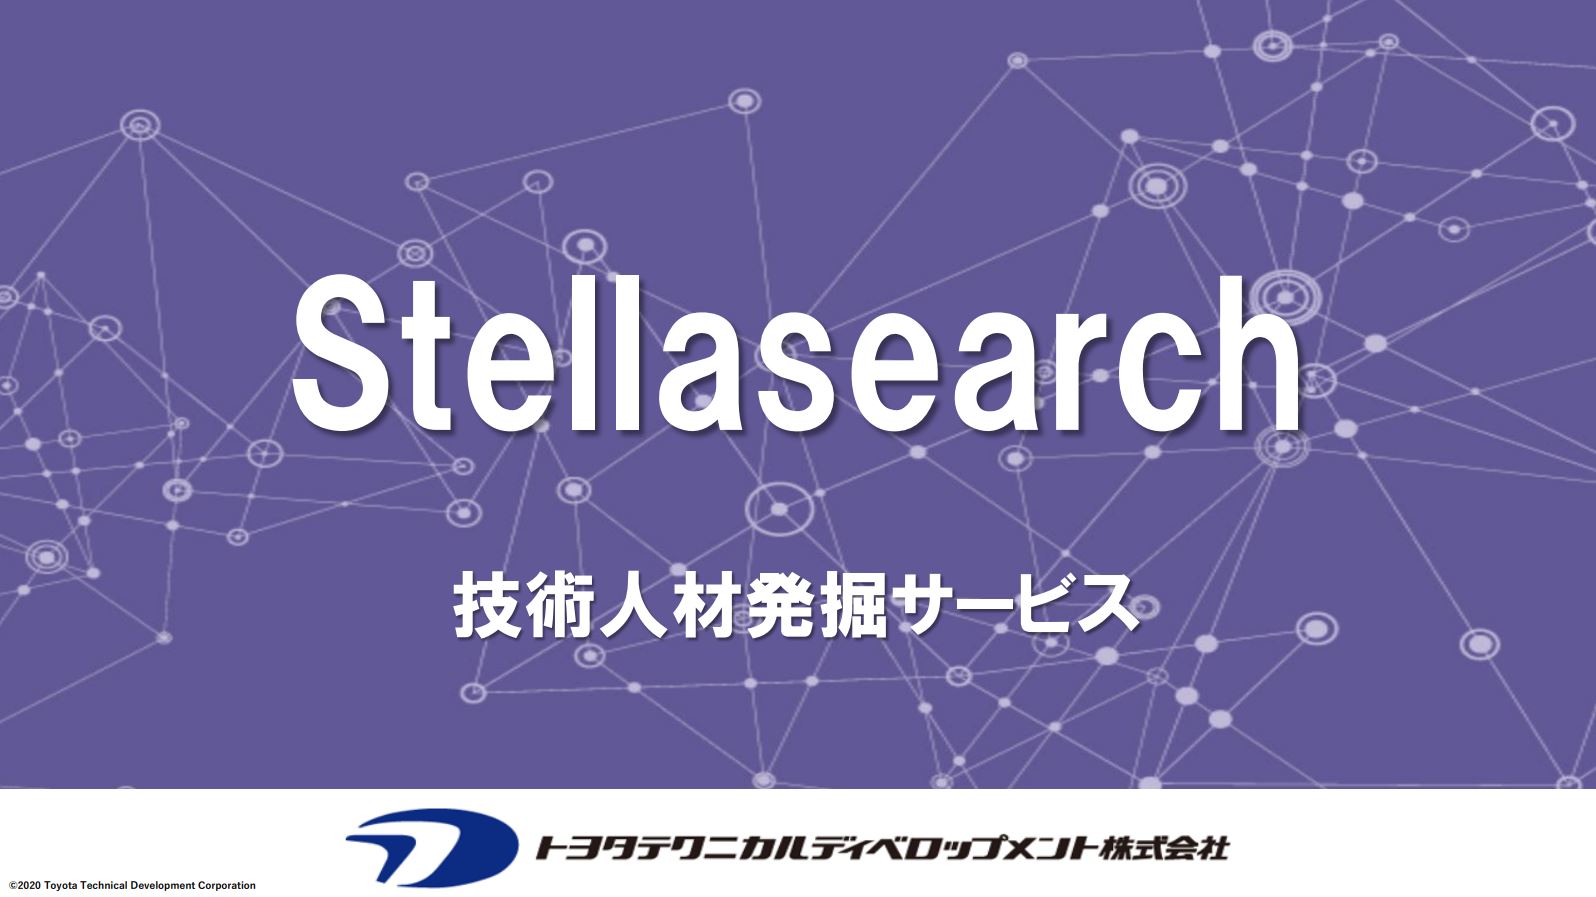 Stellaserch DL資料&動画